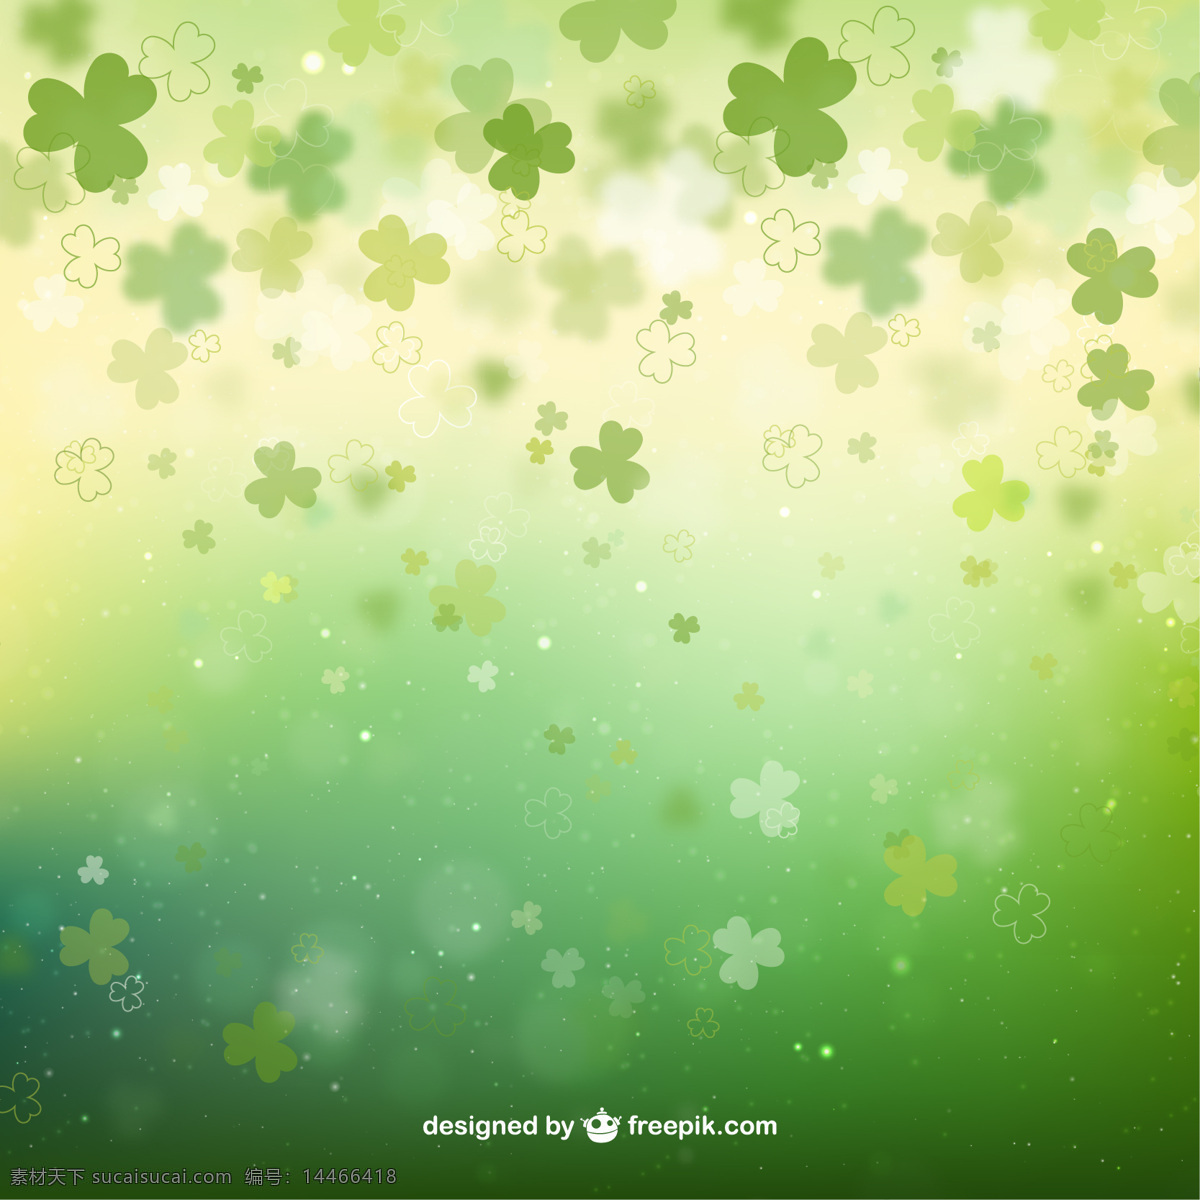 三叶草 绿色 背景 虚化 背景图案 聚会 啤酒 绿色的春天 绿色的背景 庆典 节日 背景虚化 模糊的背景下 春天的背景 文化 背景绿色 凯尔特人 爱尔兰 传统